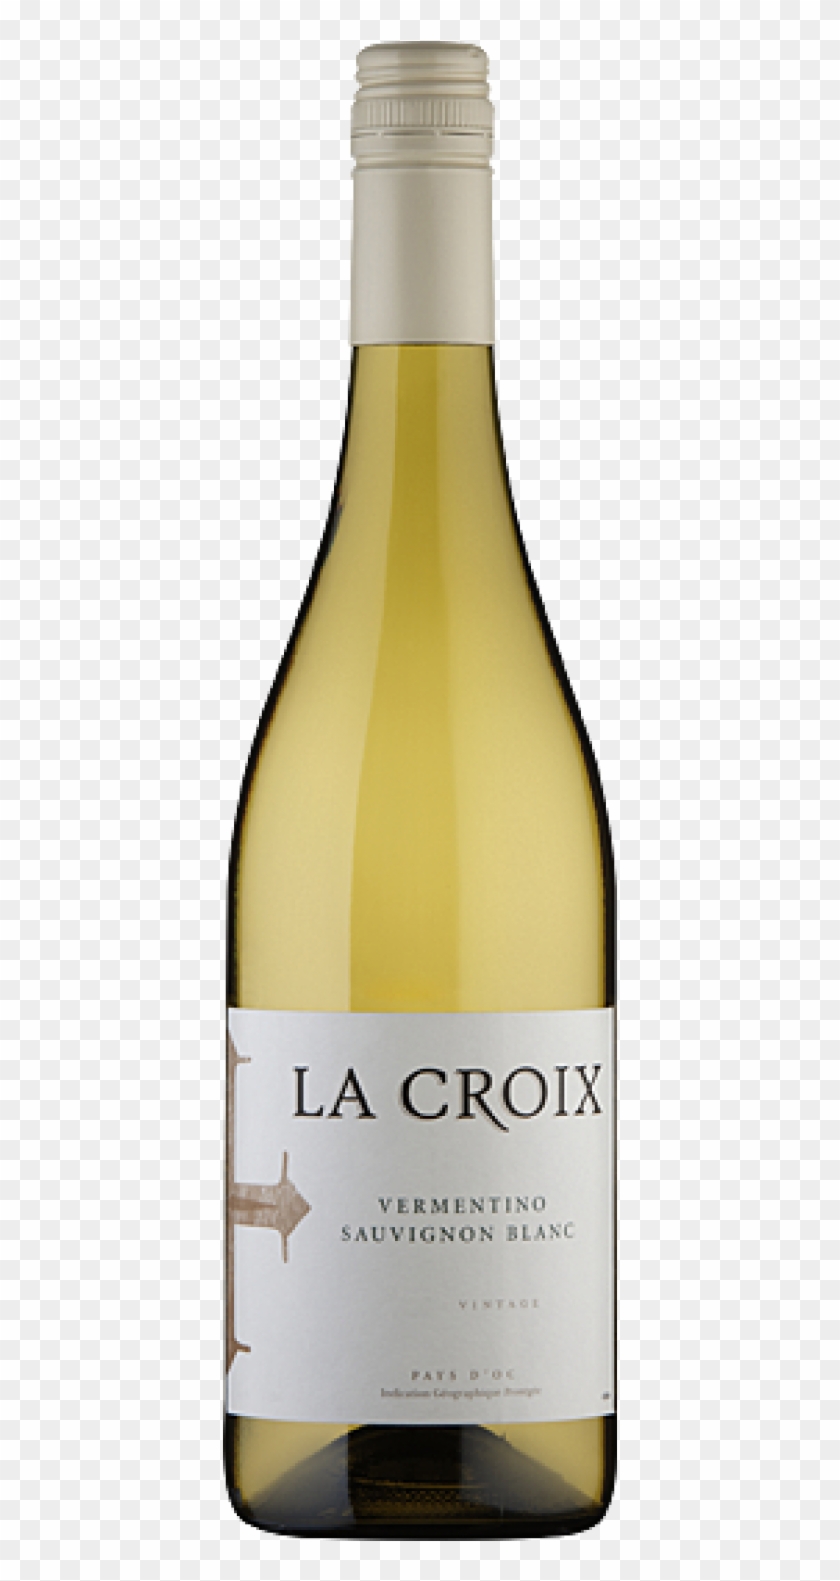 La Croix Vermentino Sauvignon Blanc Igp D'oc - Sonoma Cutrer Sonoma Coast Chardonnay 2016 Clipart #5737029